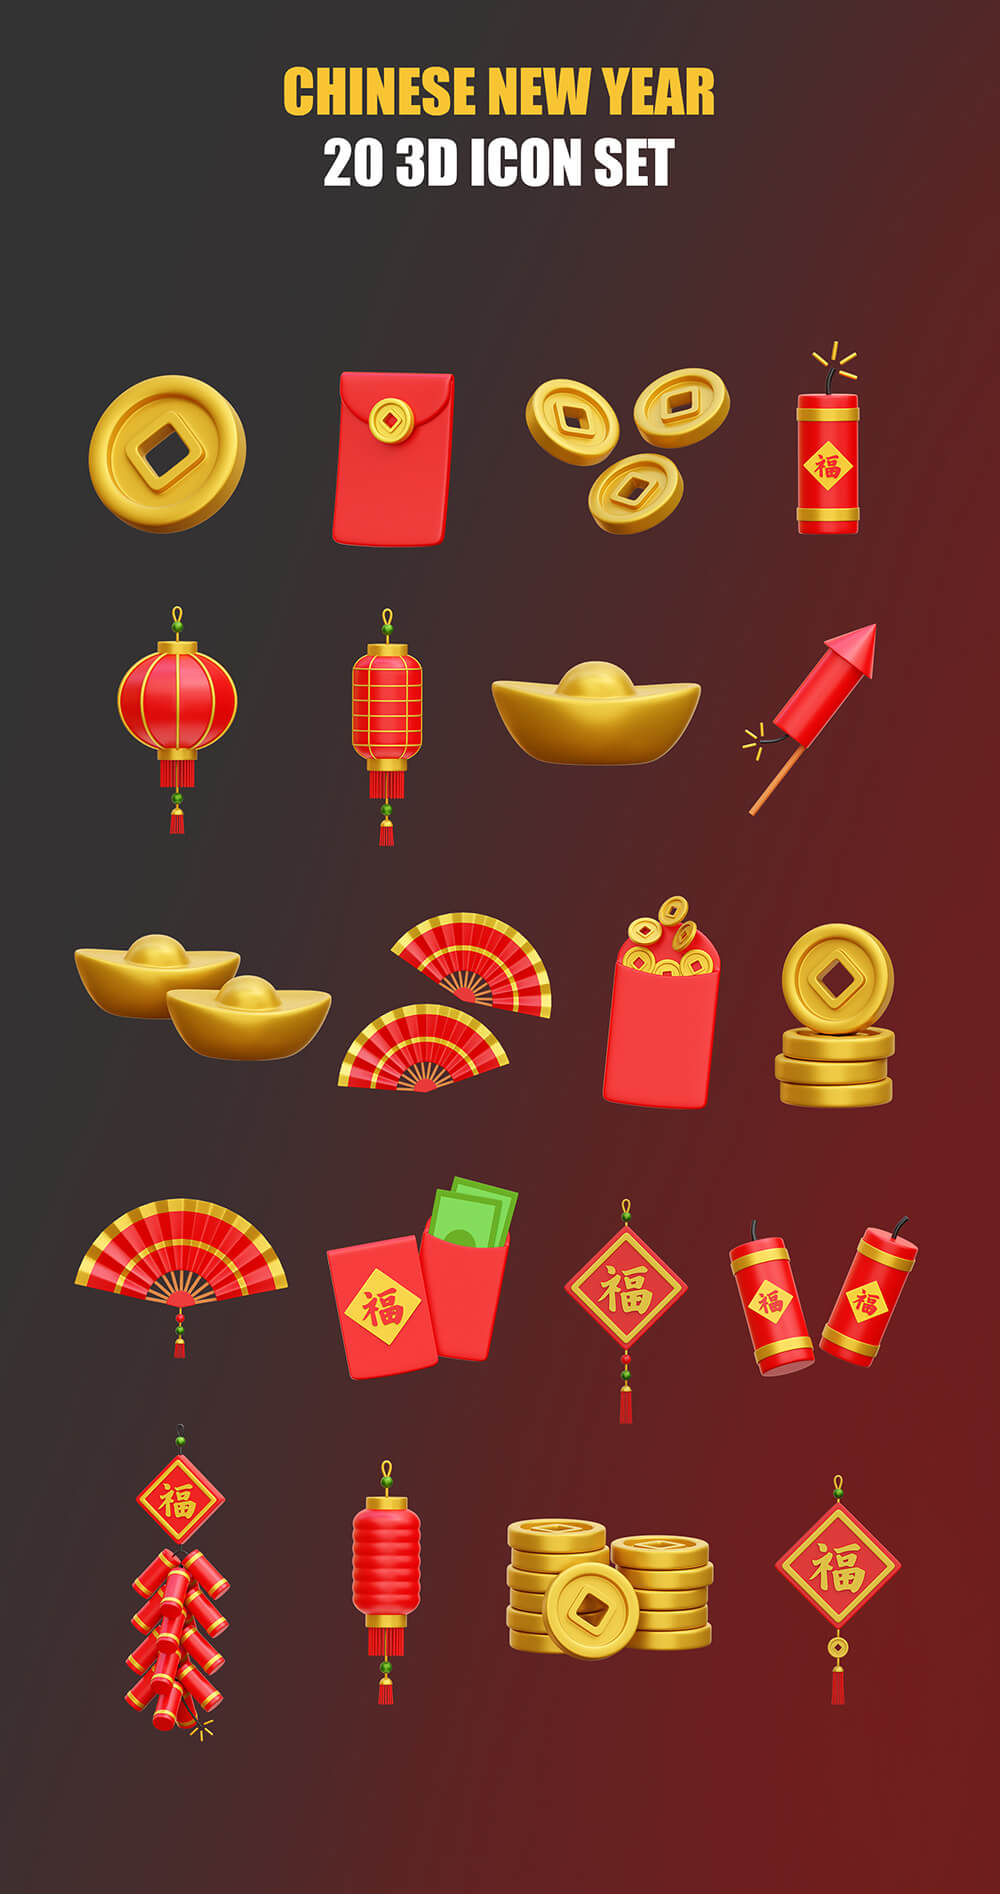 中国新年3D图标插画 图标素材 第1张